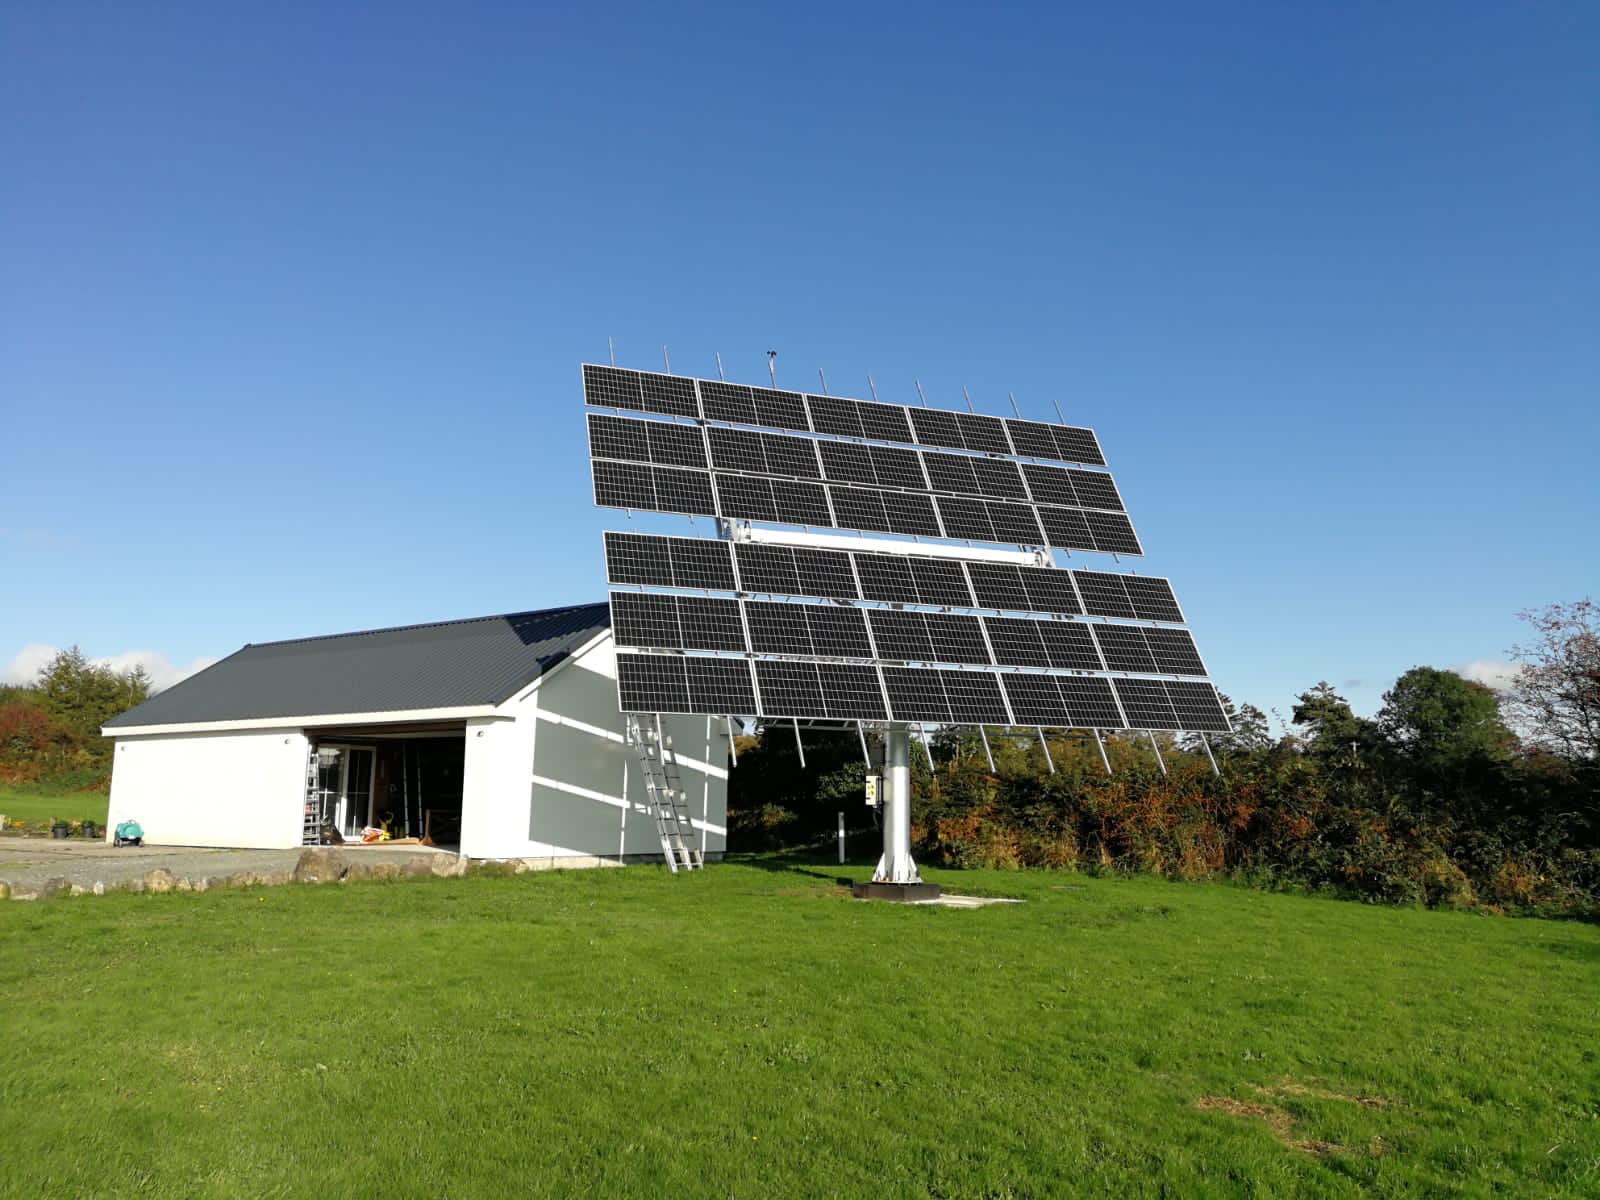 نیروگاه 25 کیلوواتی PV ایرلند، از پنل های خورشیدی تمام صفحه 460 واتی مونو DAH استفاده می کند